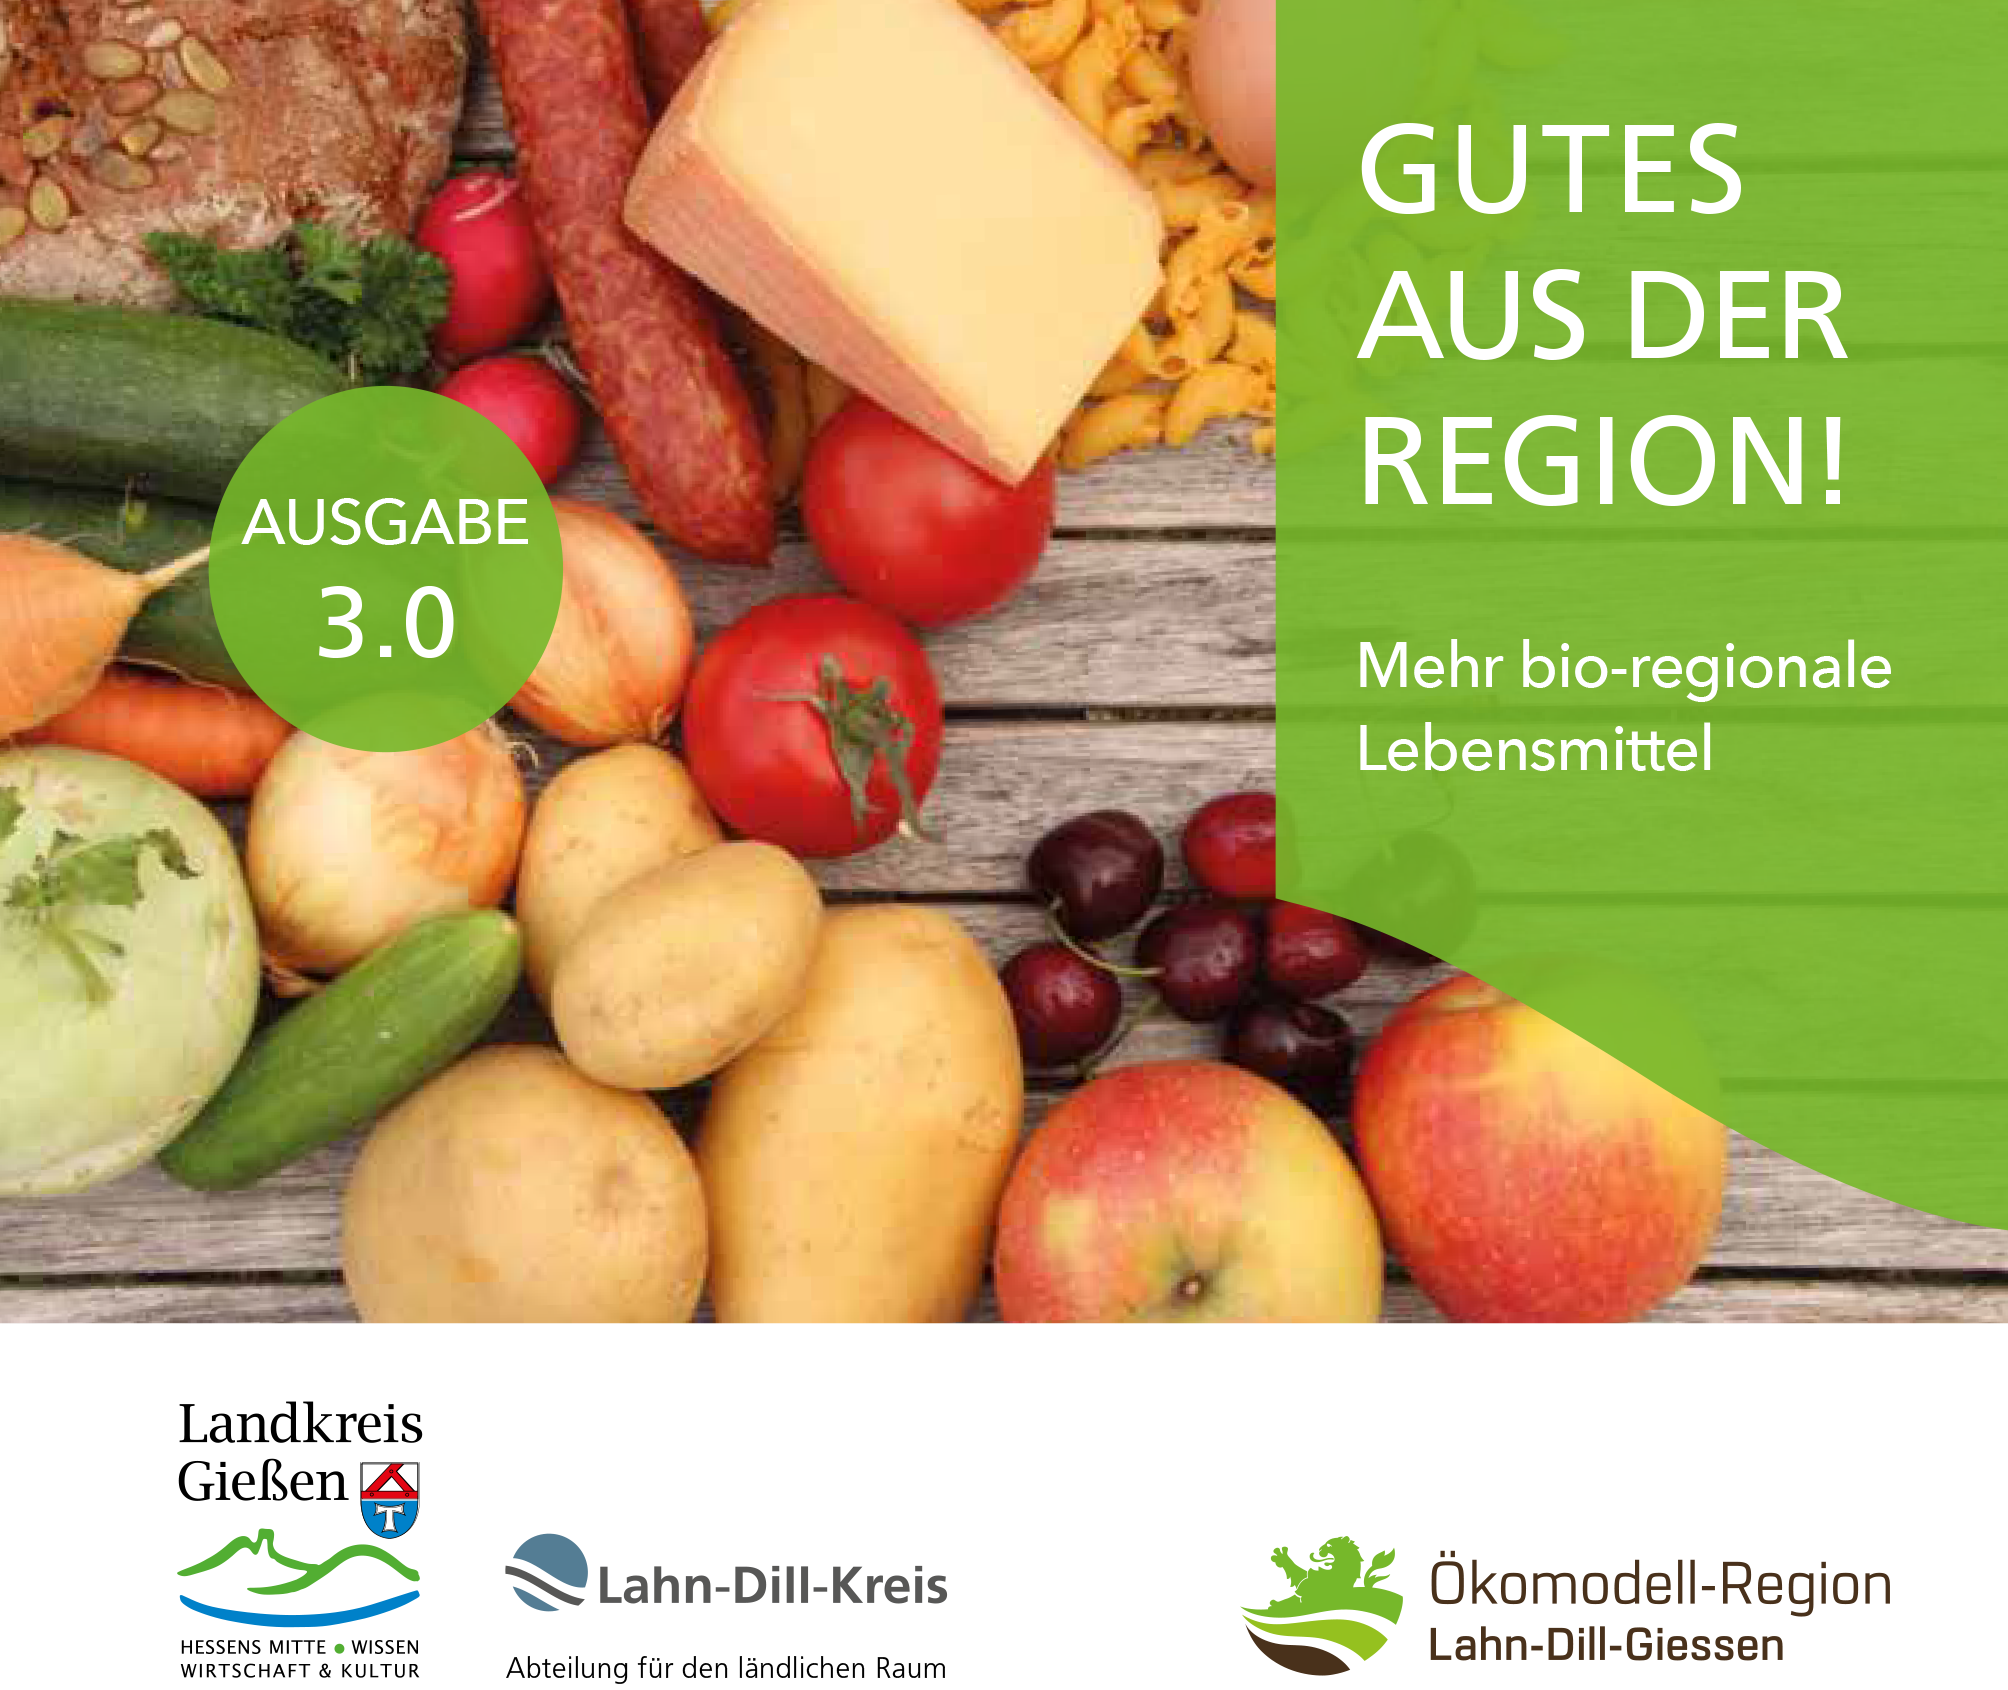 Gutes aus der Region– Mehr bio-regionale Lebensmittel